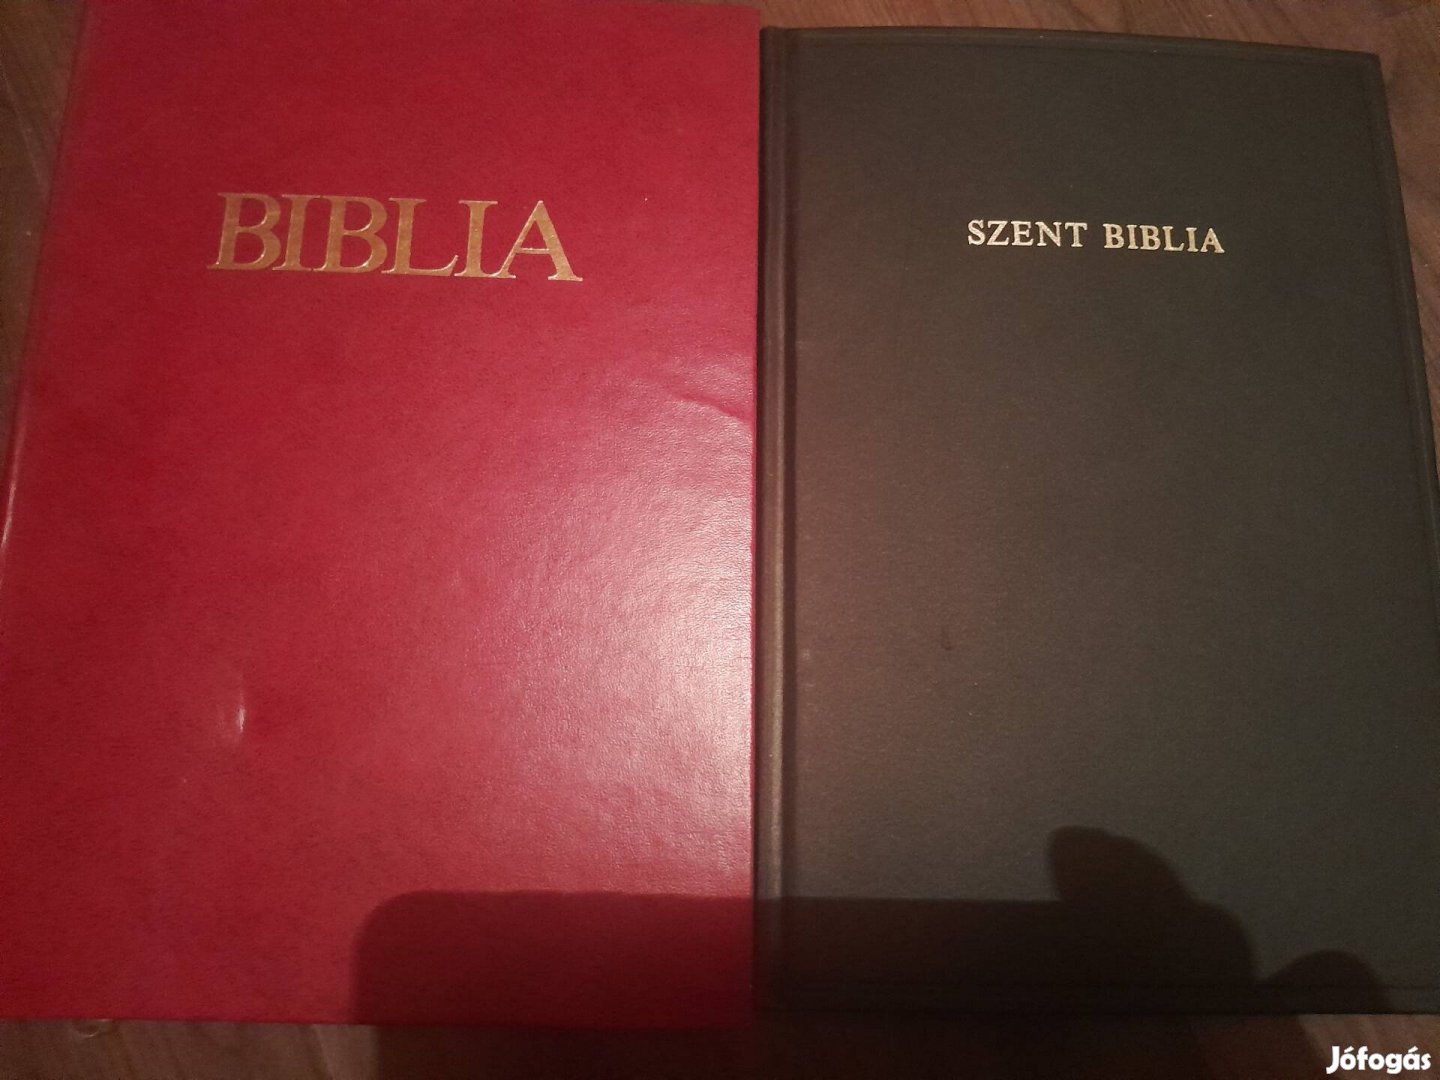 Biblia könyvek 